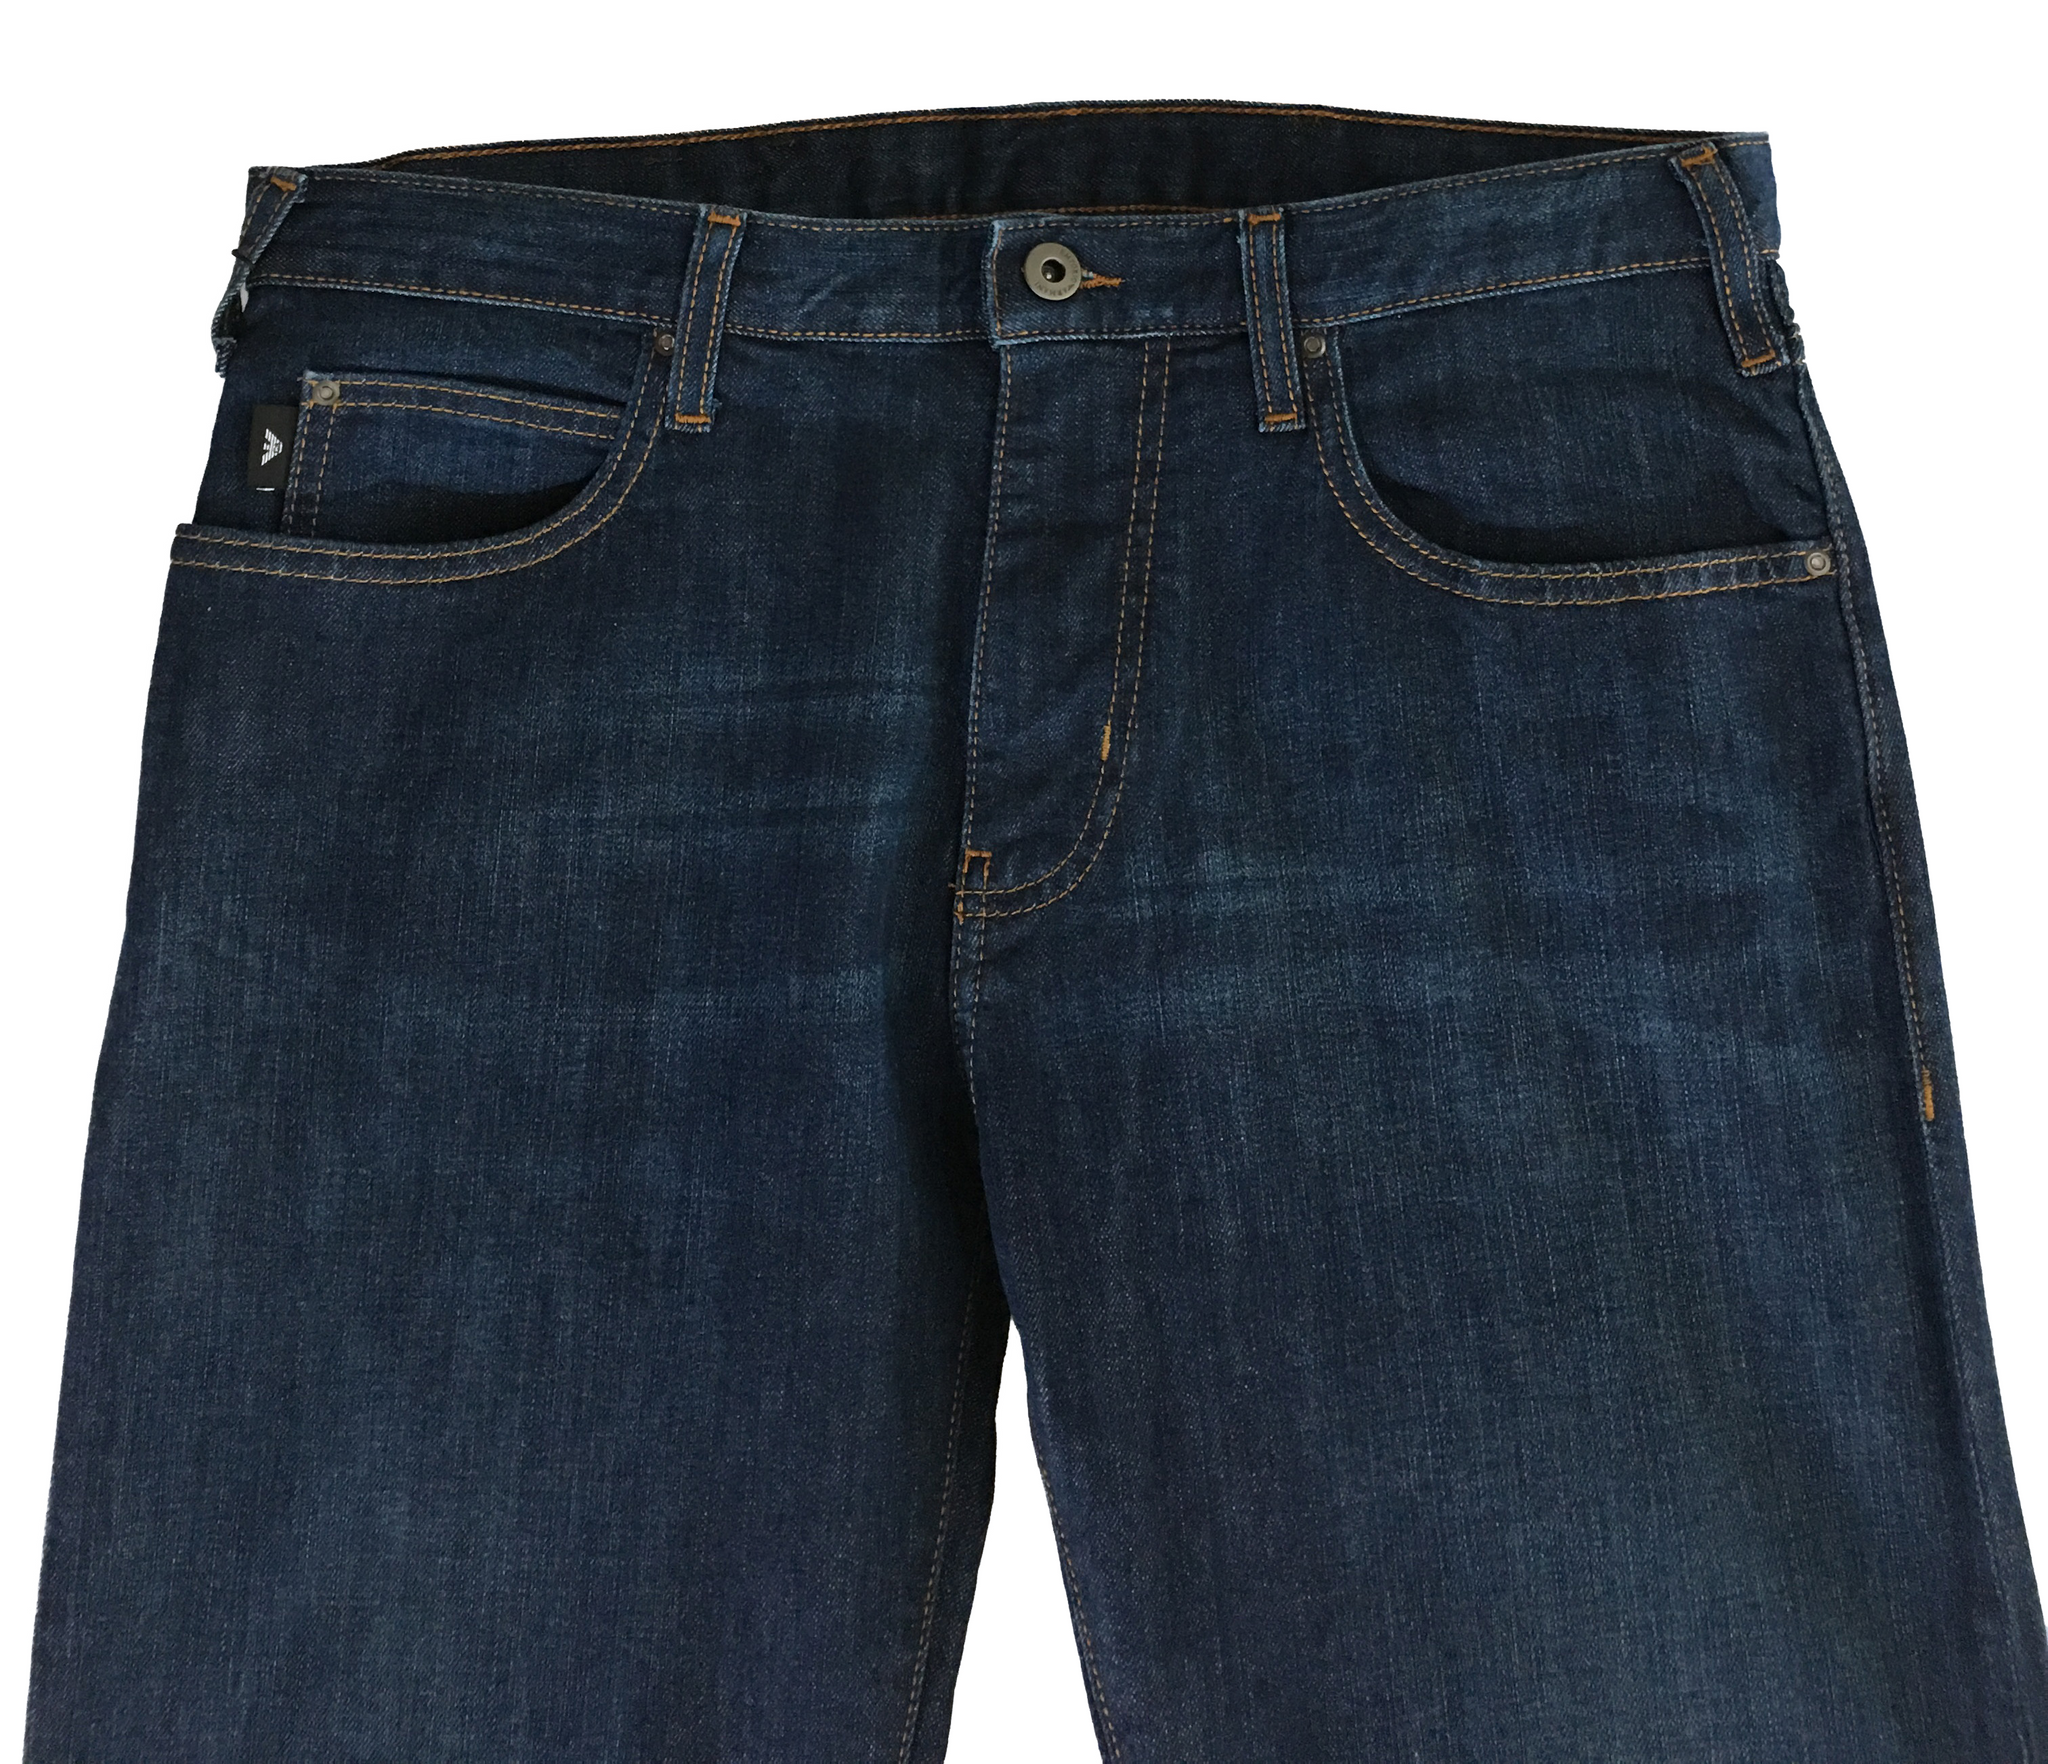 armani jeans j45 slim fit blue